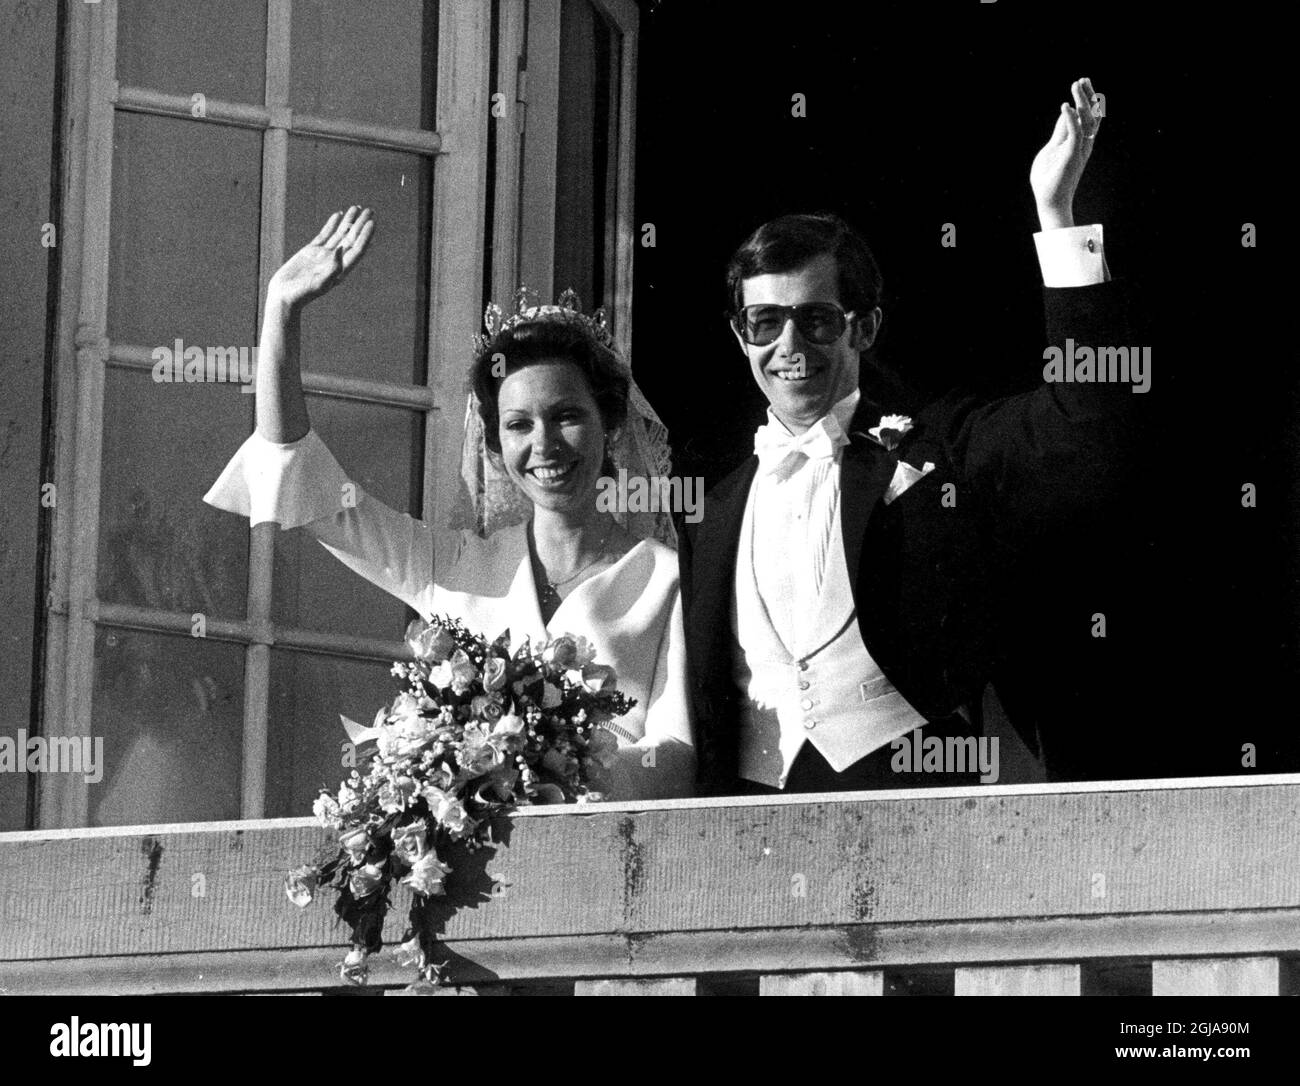 Â© SCANPIX, Stockholm, Sverige, 19740615, Foto: SCANPIX code 20360 le mariage de la princesse Christina (soeur du roi Carl Gustaf) à M. Tord Magnuson. Banque D'Images